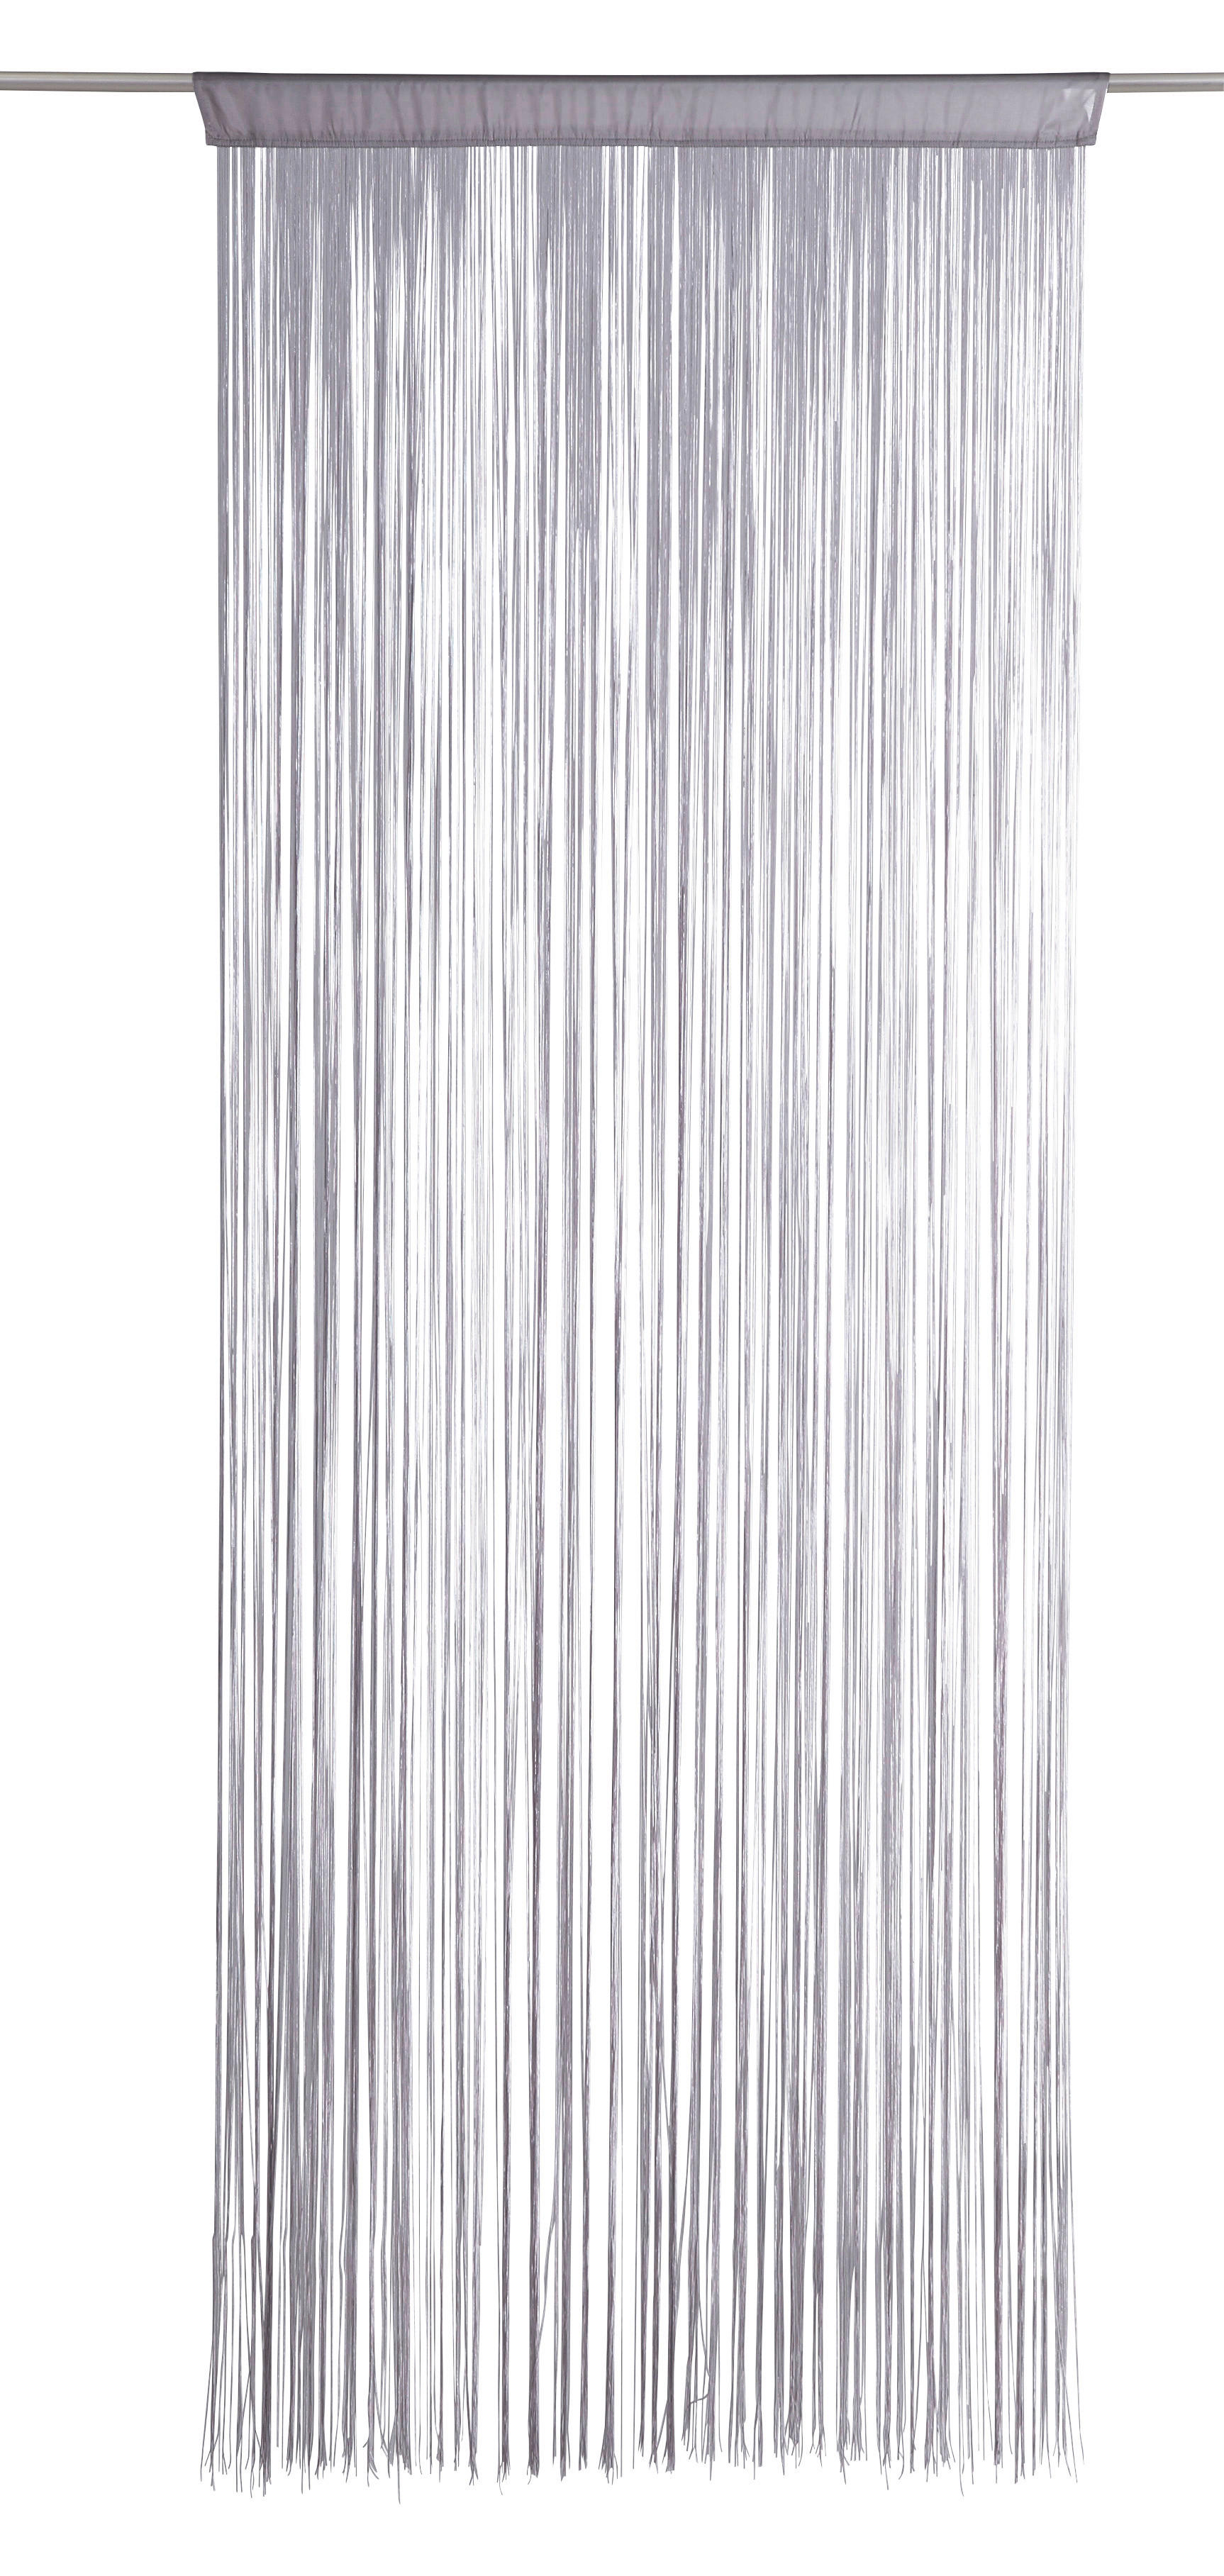 NITASTA ZAVESA UNI  prosojno  90/245 cm   - srebrna, Konvencionalno, tekstil (90/245cm) - Boxxx